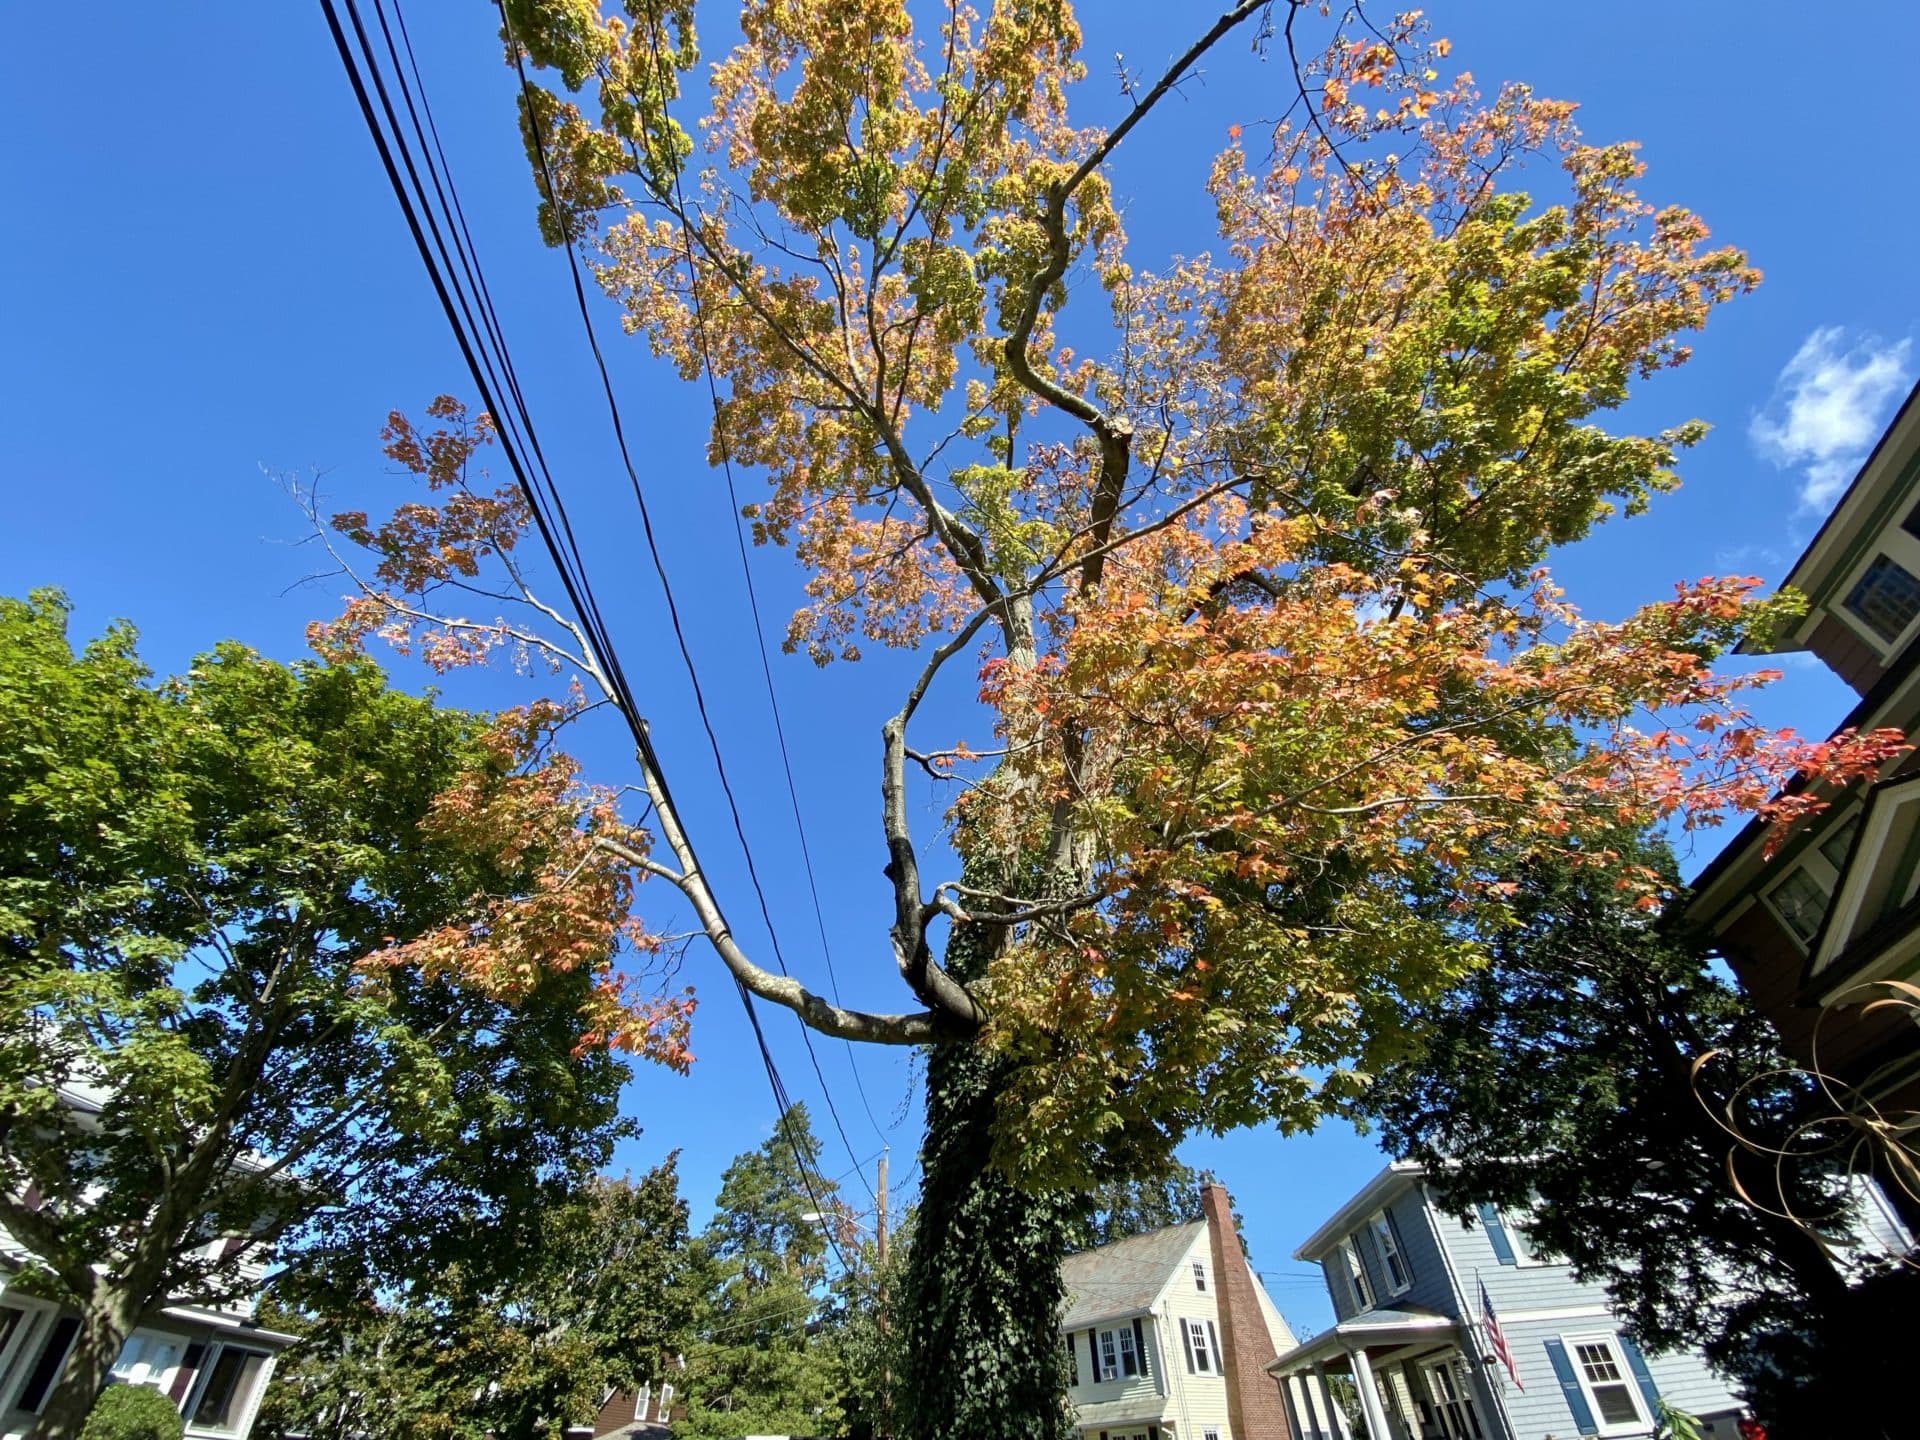 A favorite tree of editor Meghan Kelly in her neighborhood. (Meghan Kelly/WBUR)